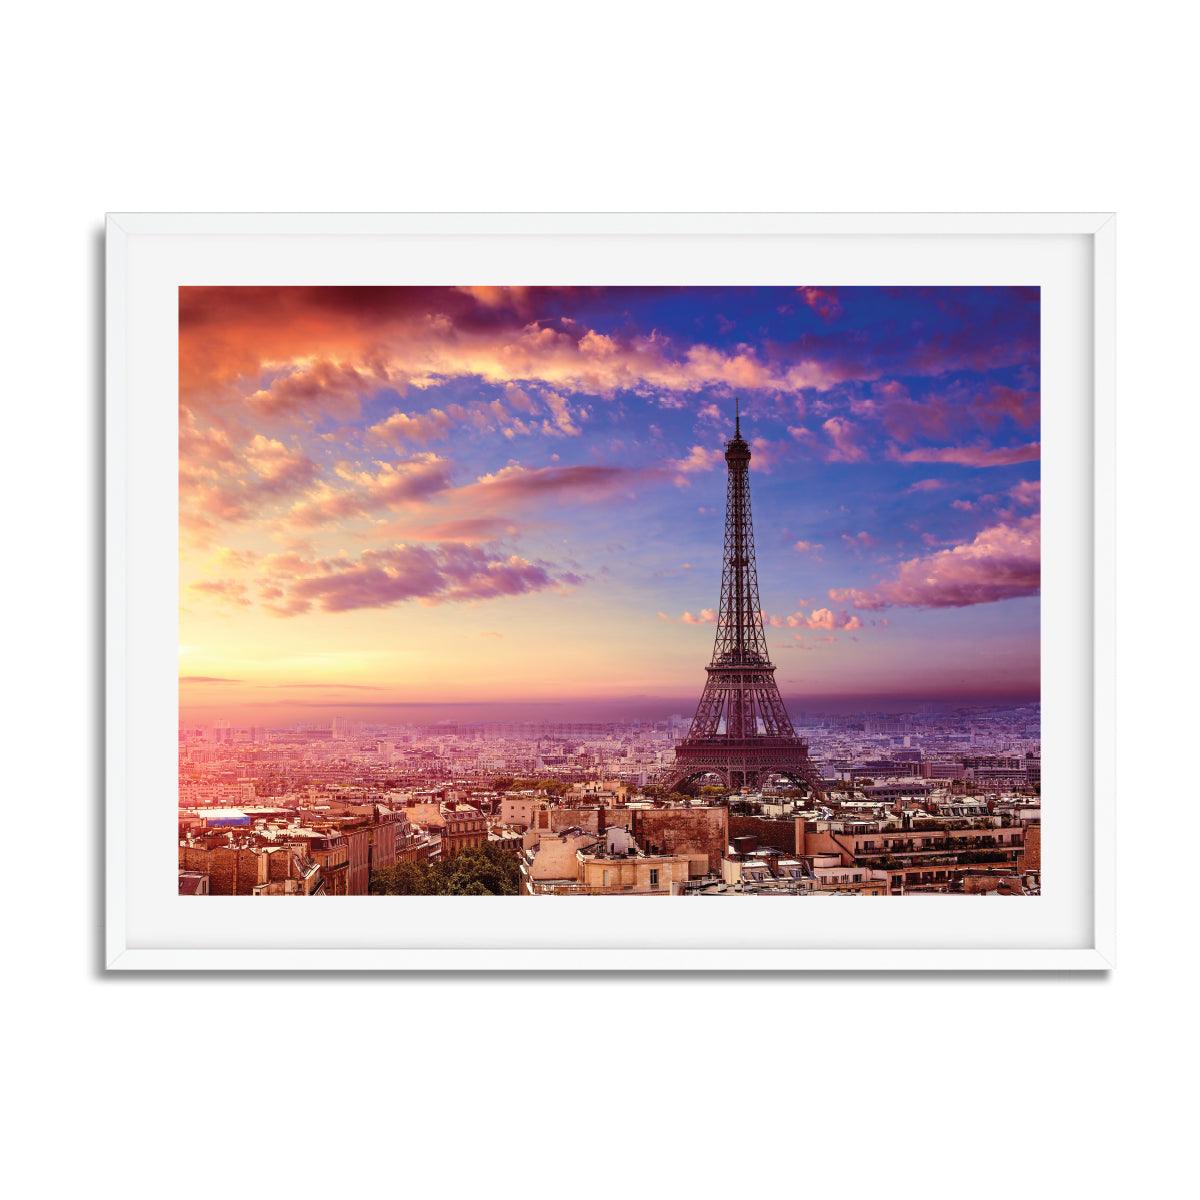 Paris - The City of Love - Printibly